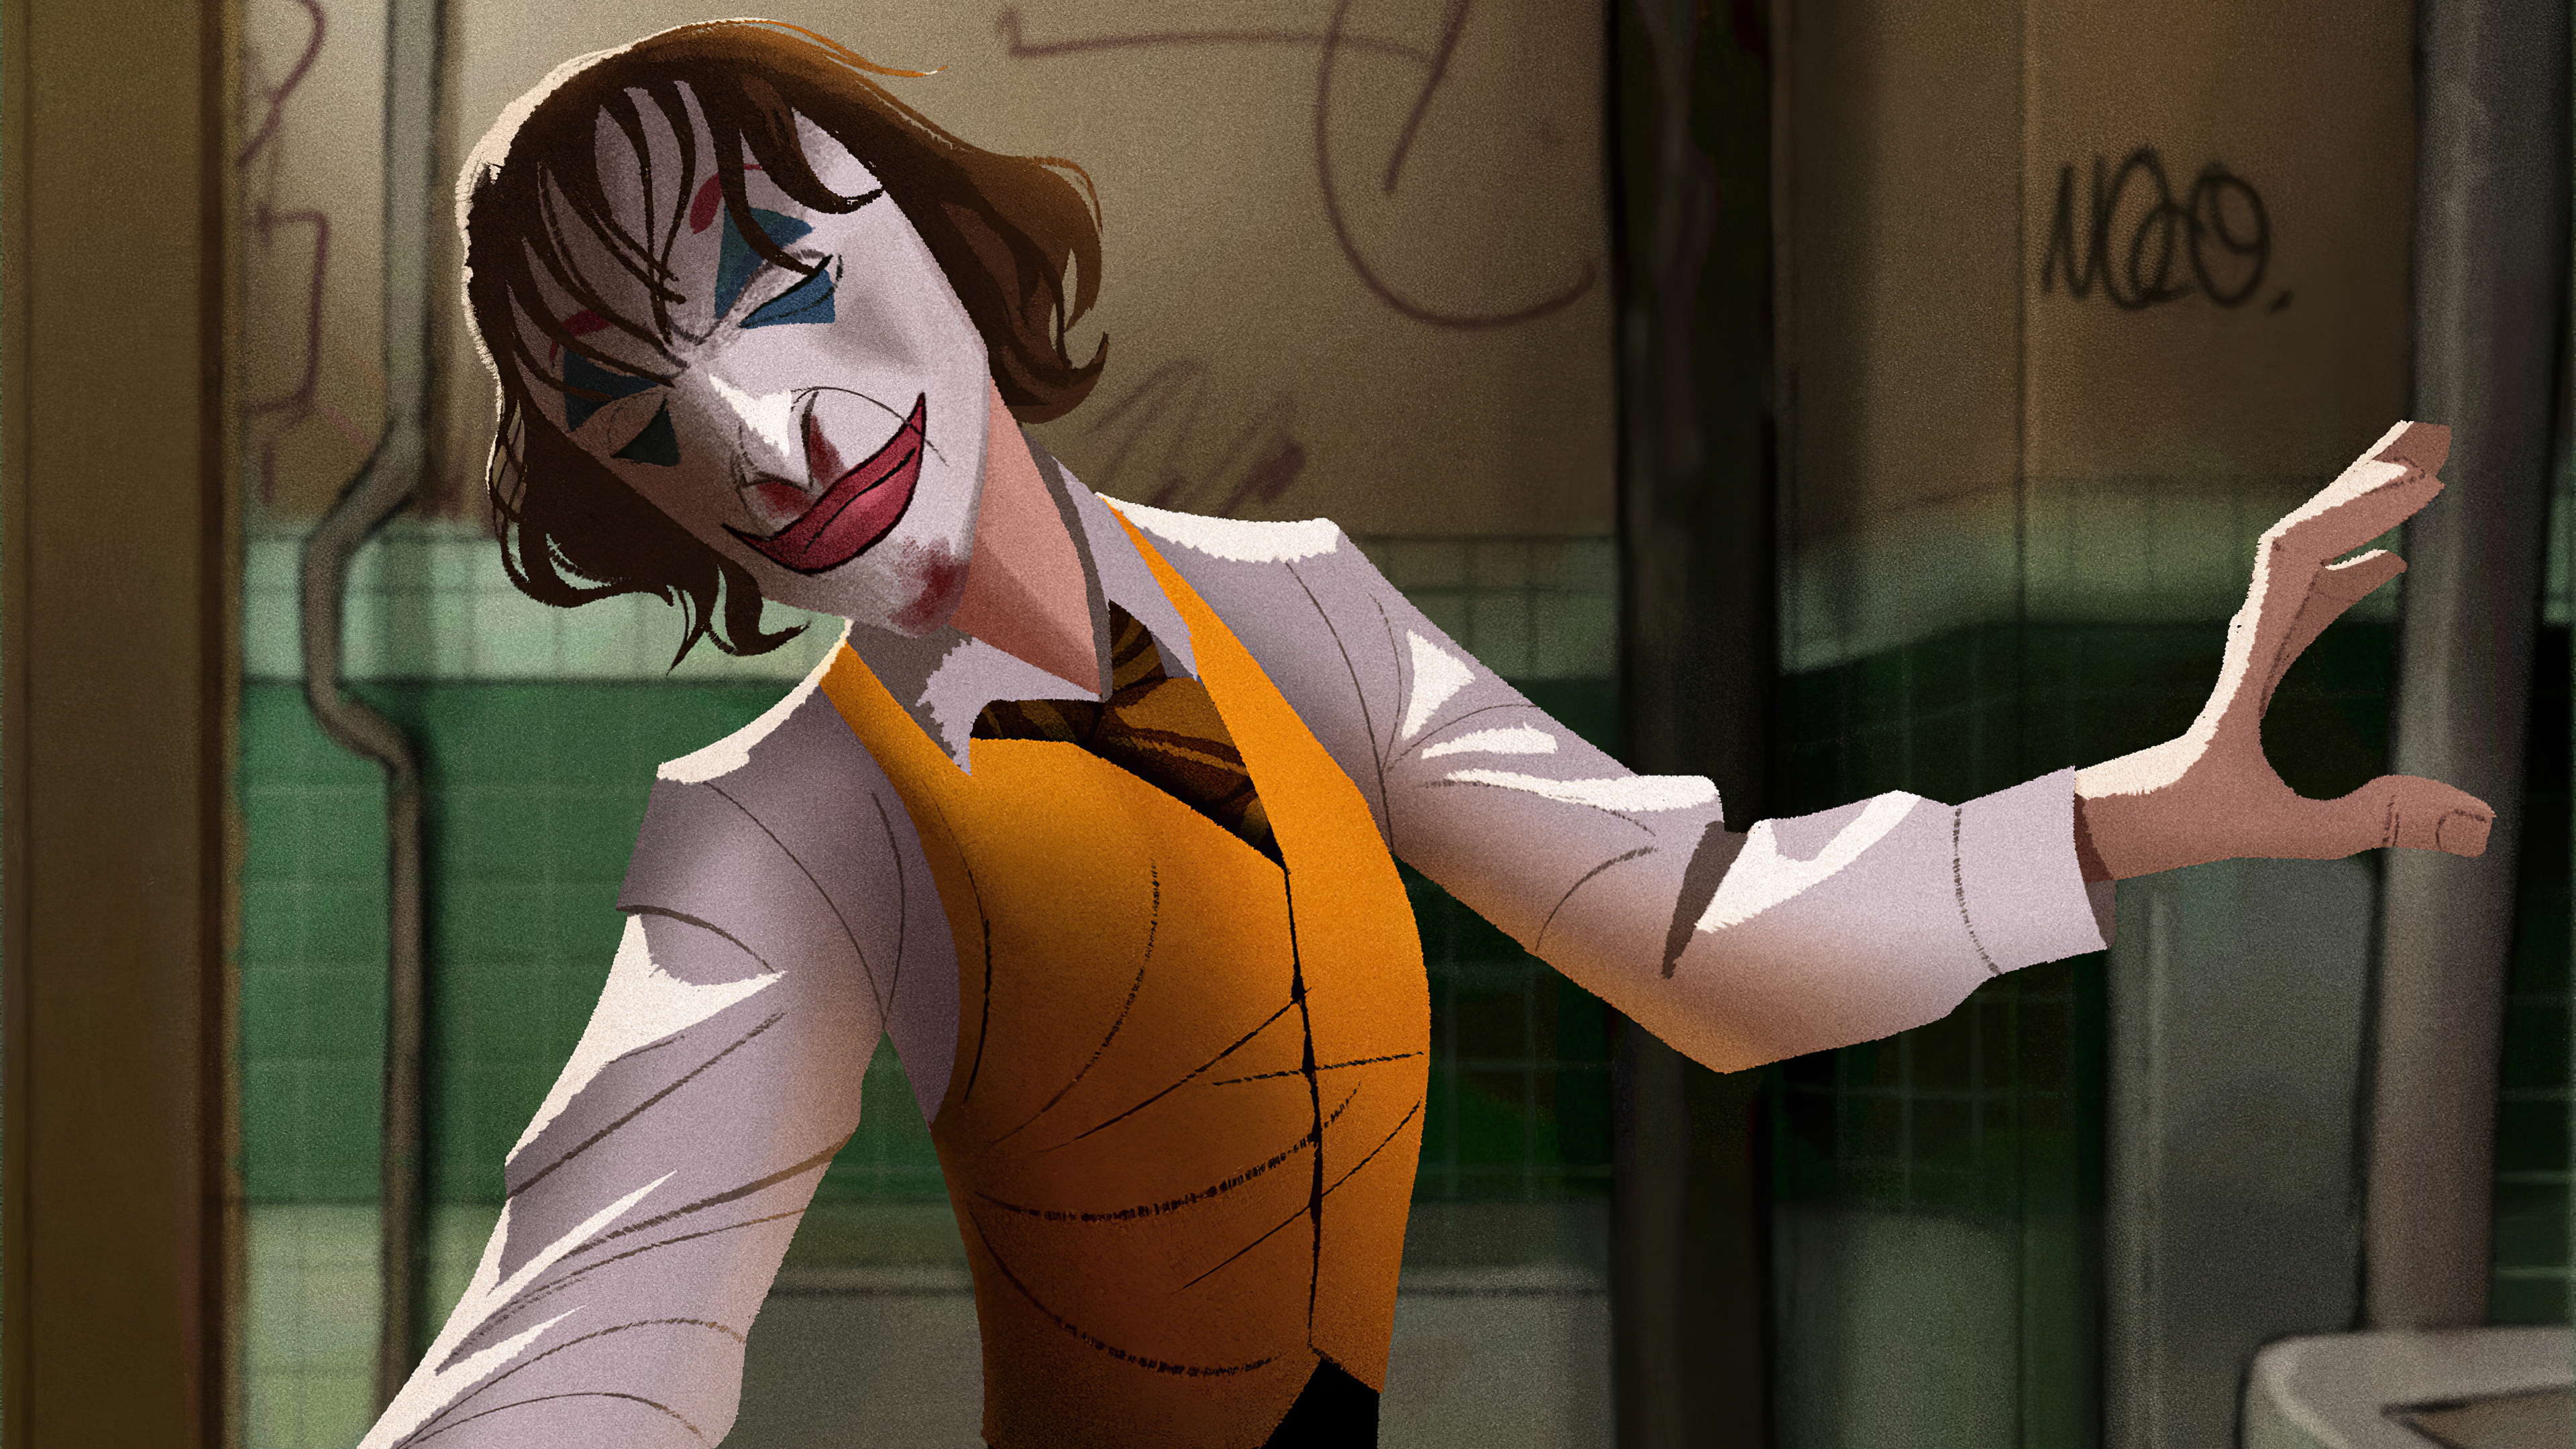 Joker 4k Ultra HD Wallpaper by Ahmad Rafiei Vardanjani